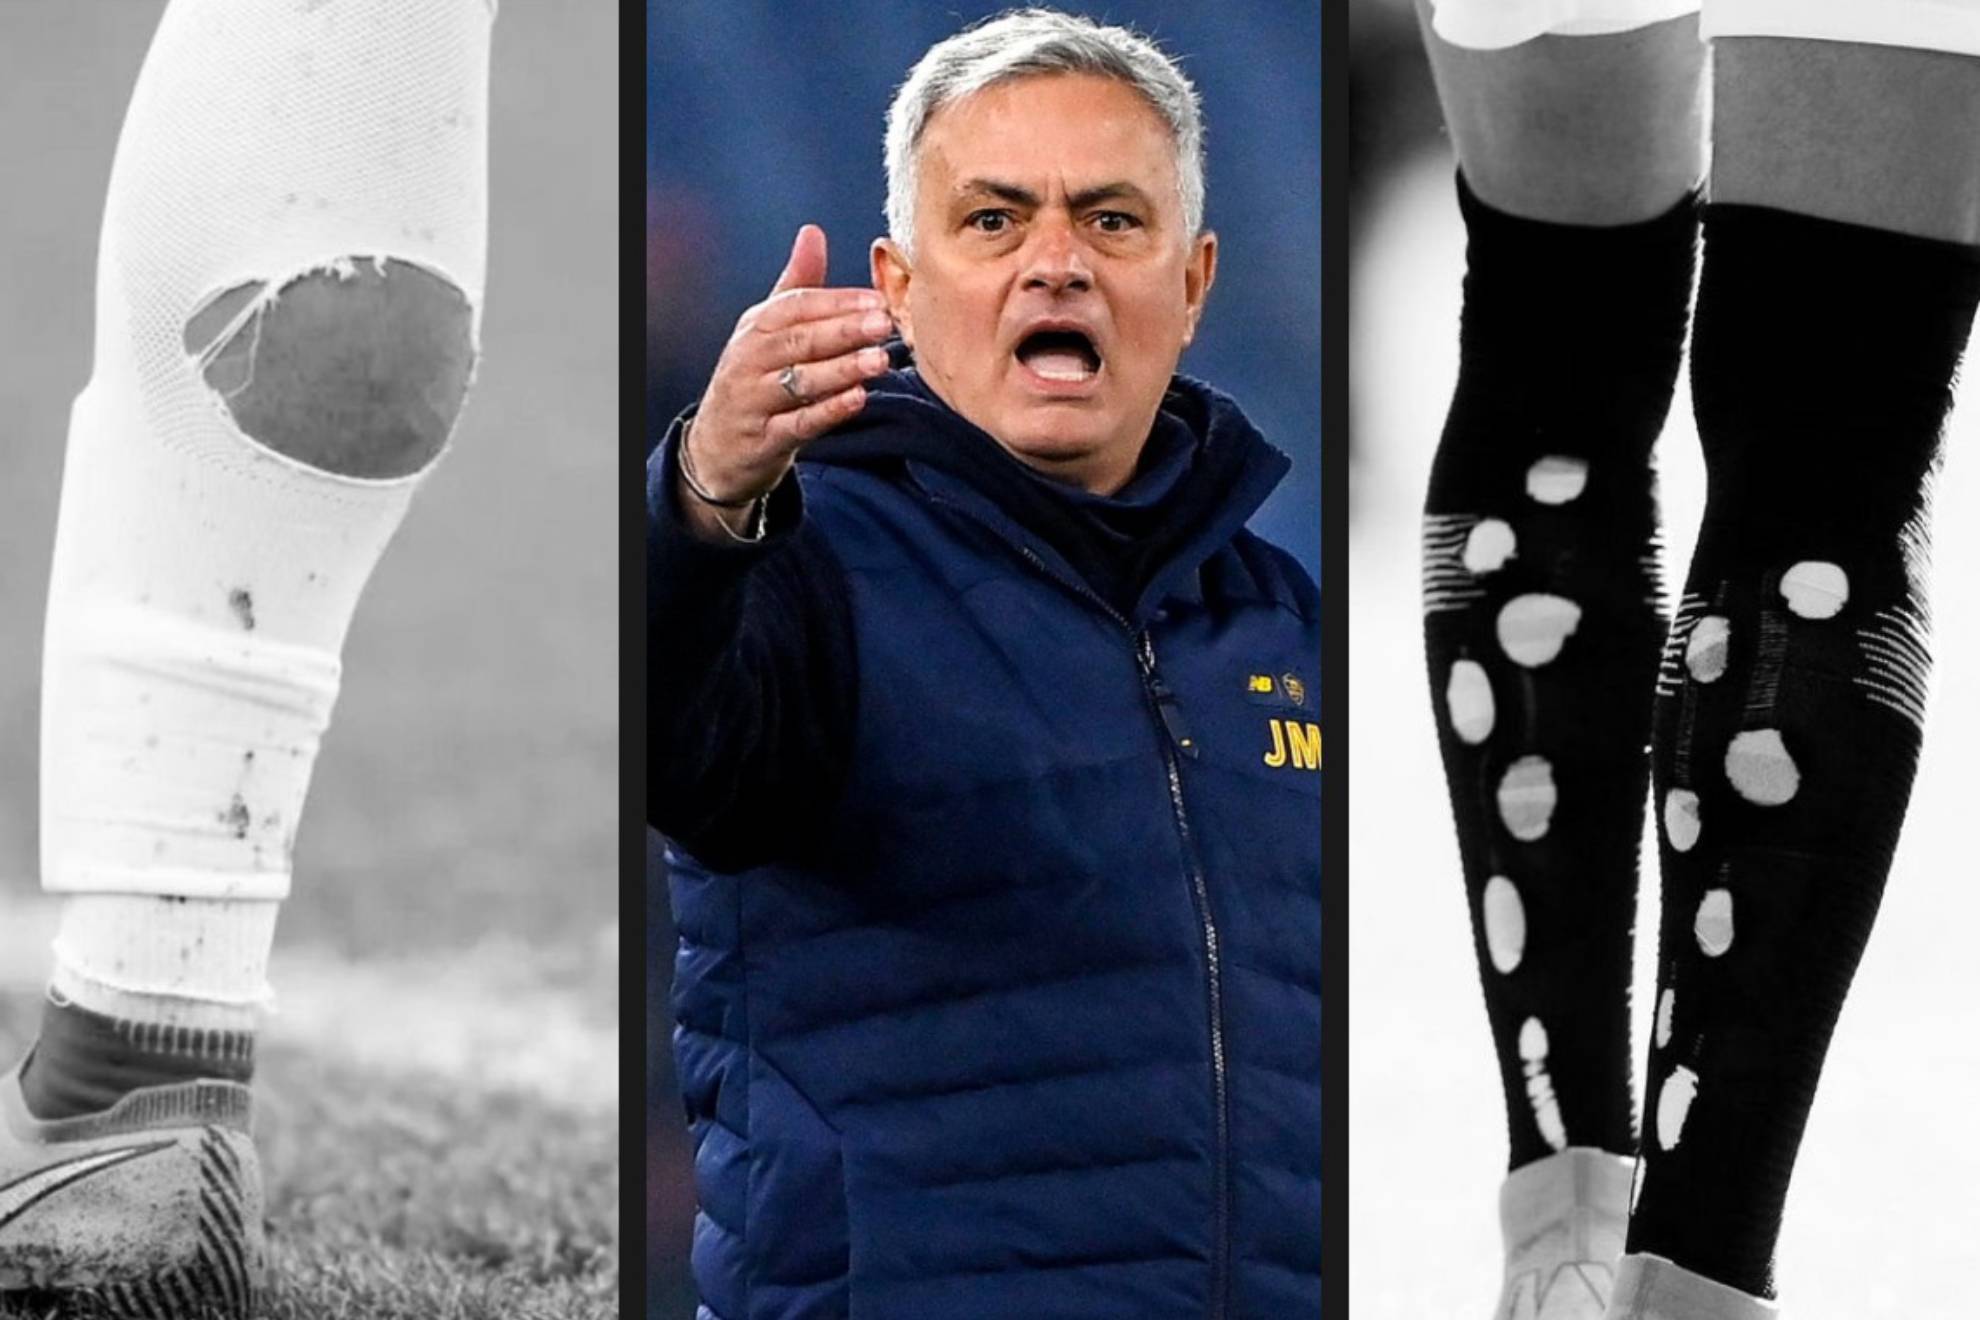 José Mourinho ha publicado en su cuenta de Instagram varias imágenes de futbolistas con la medias cortadas.  El entrenador de la Roma ha compartido con ironía la siguiente reflexión crítica sobre esta moda: "Bonitas medias para un juego bonito... Aprobadas por las autoridades futbolísticas".